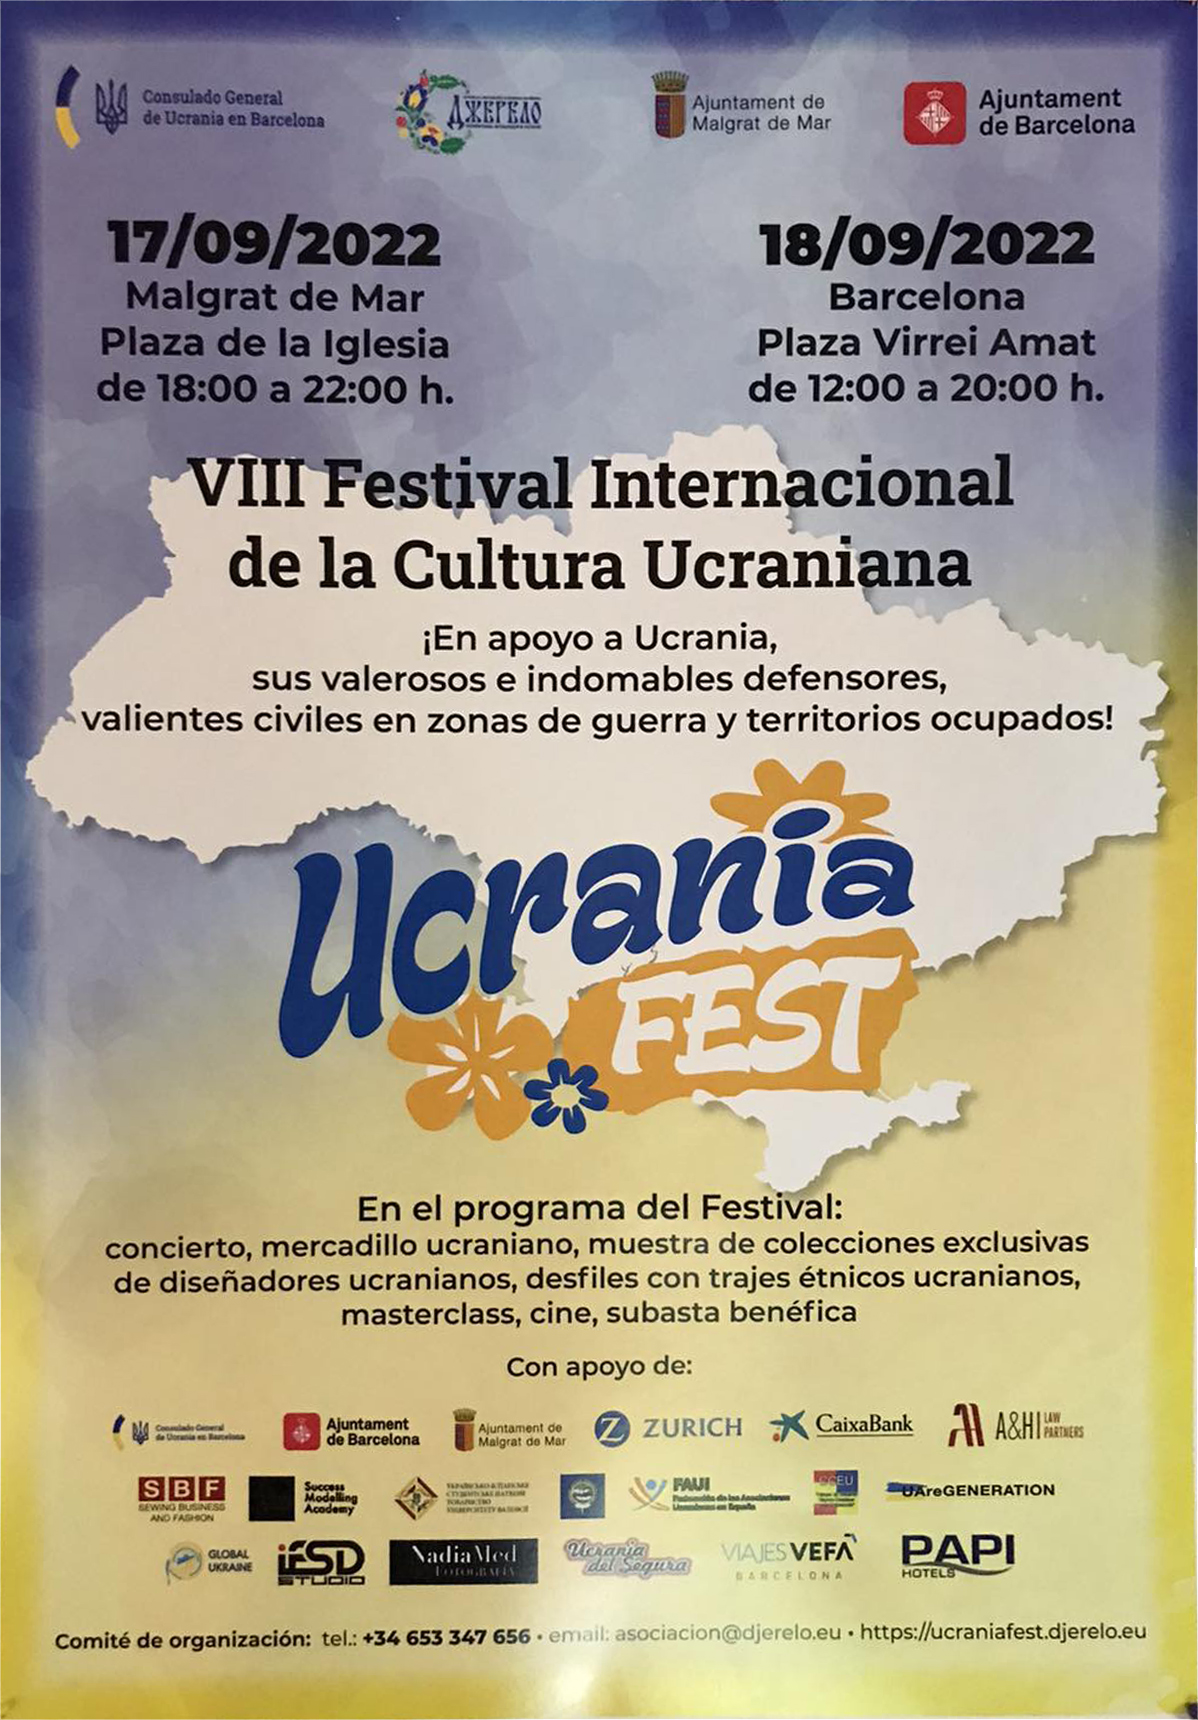 Ucrania Fest 17 18 09 2022